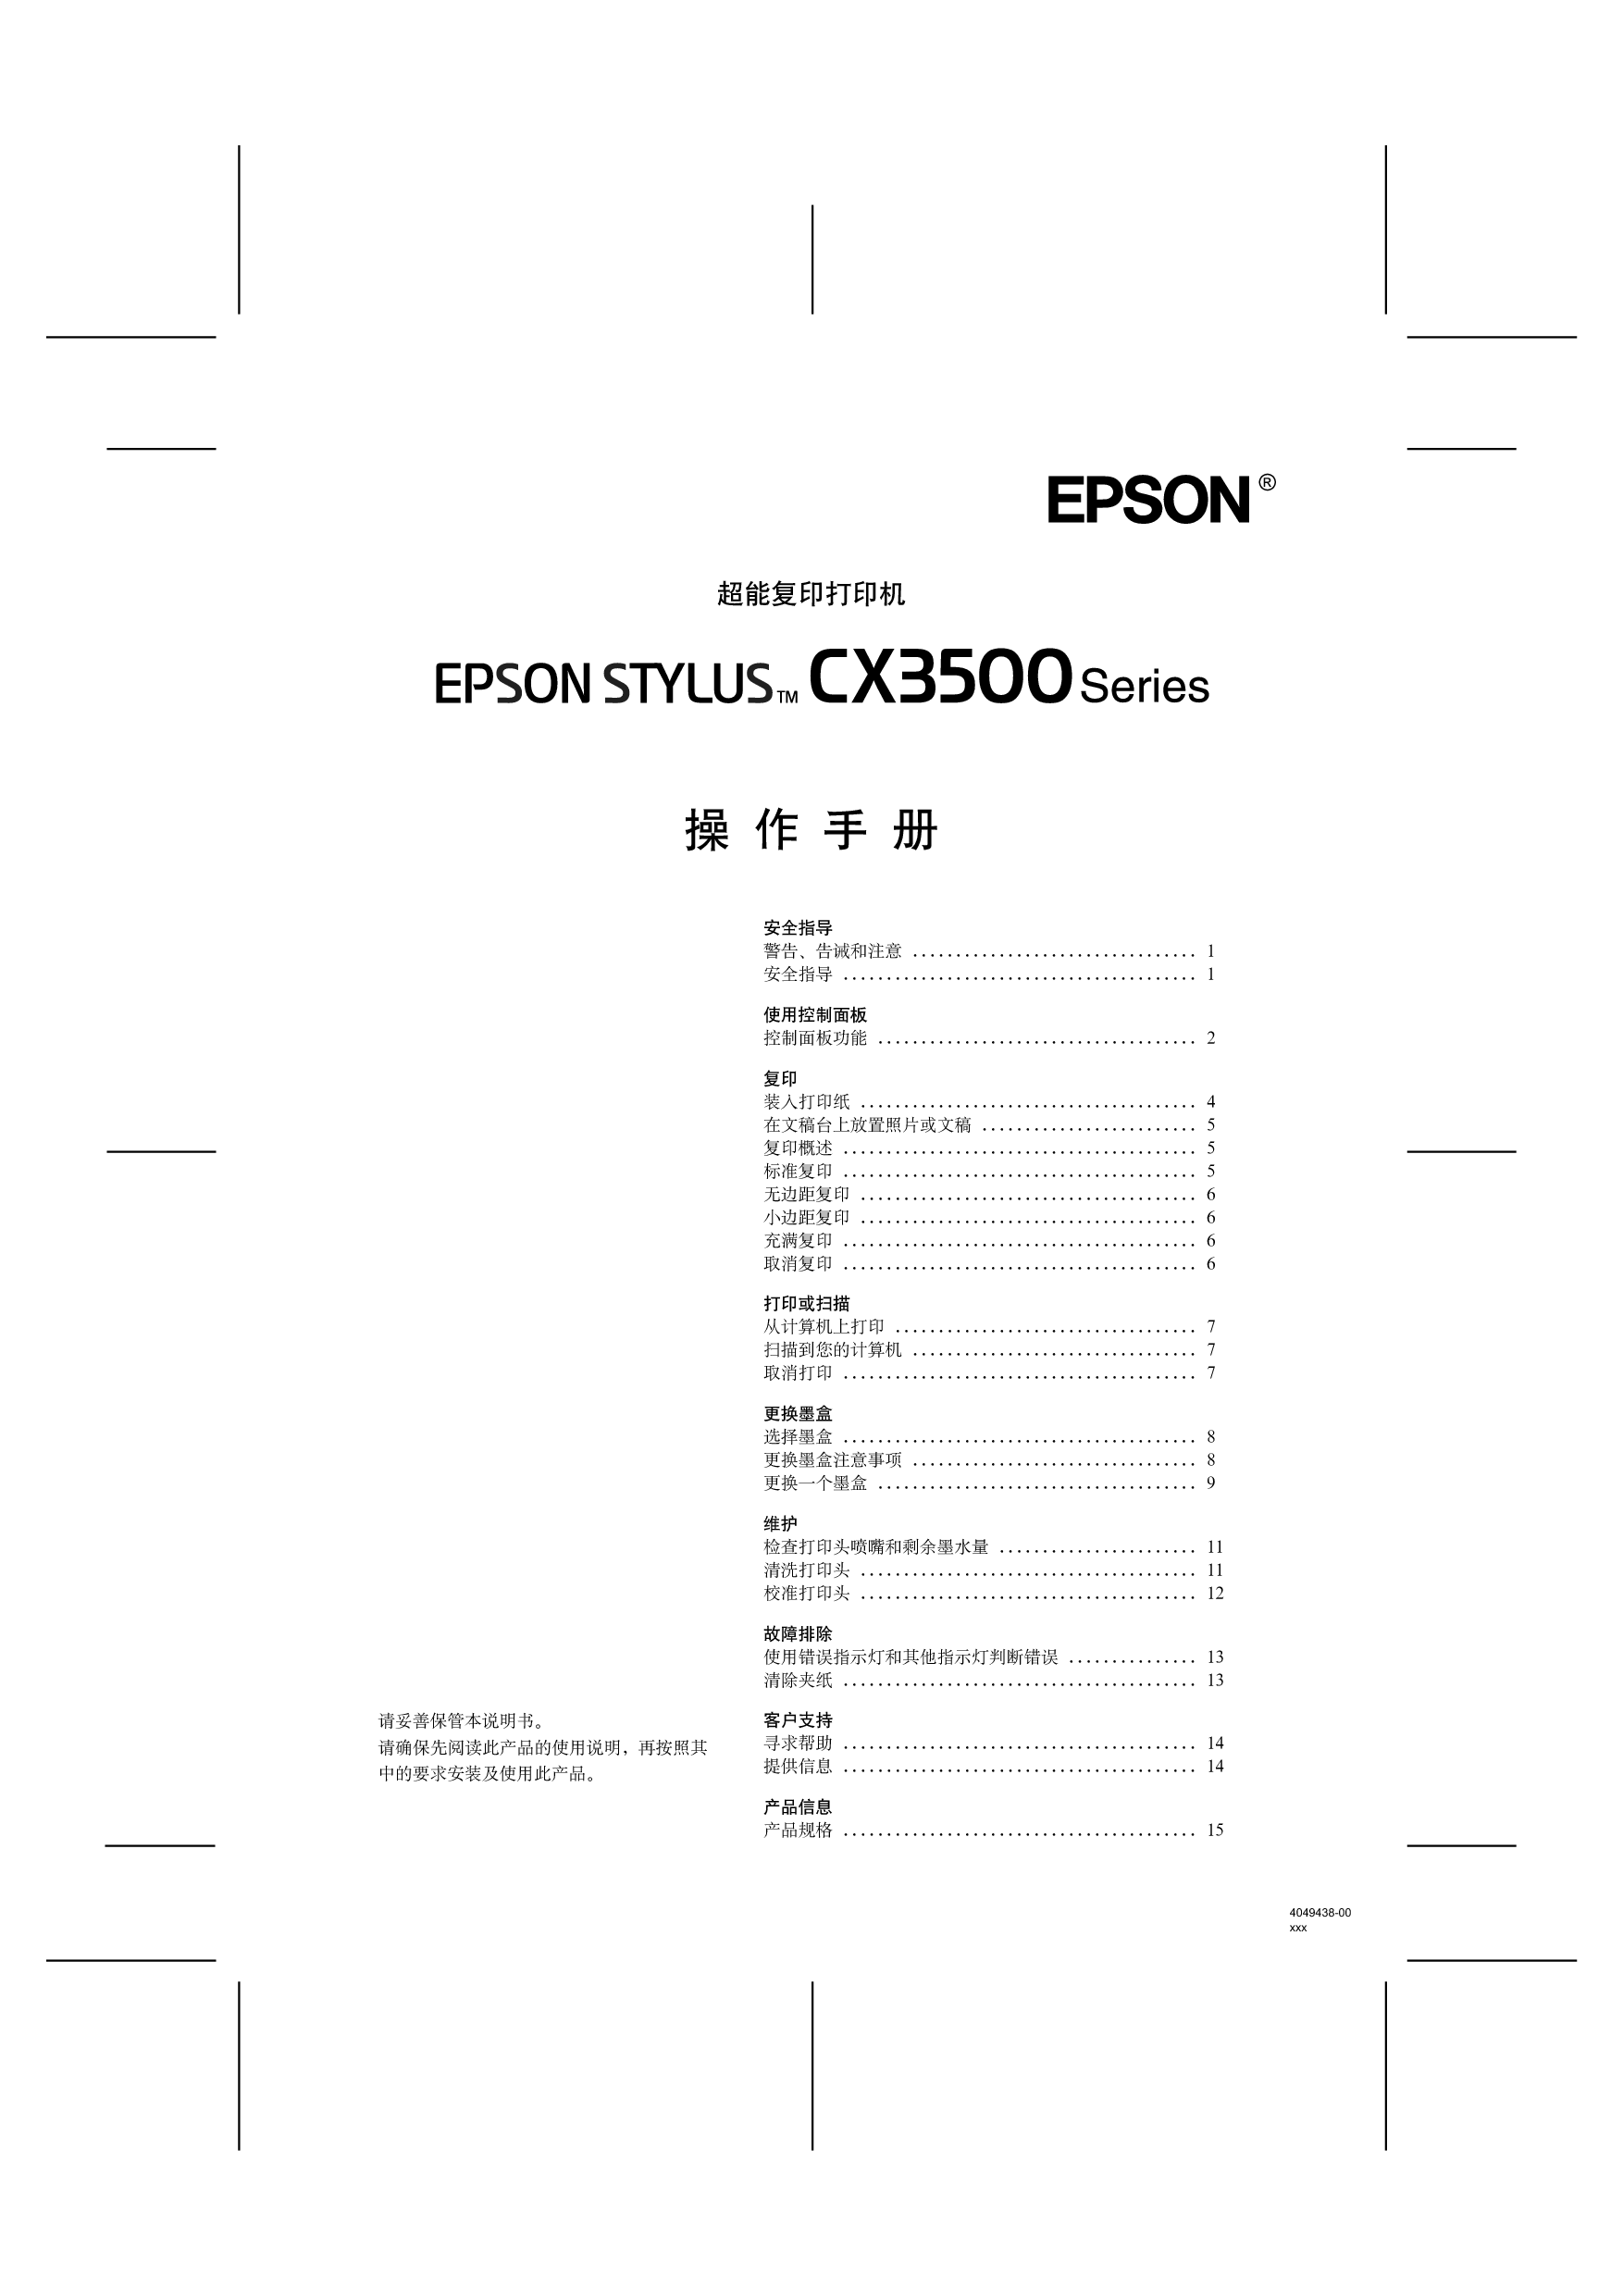 爱普生 Epson STYLUS CX3500 使用手册 封面